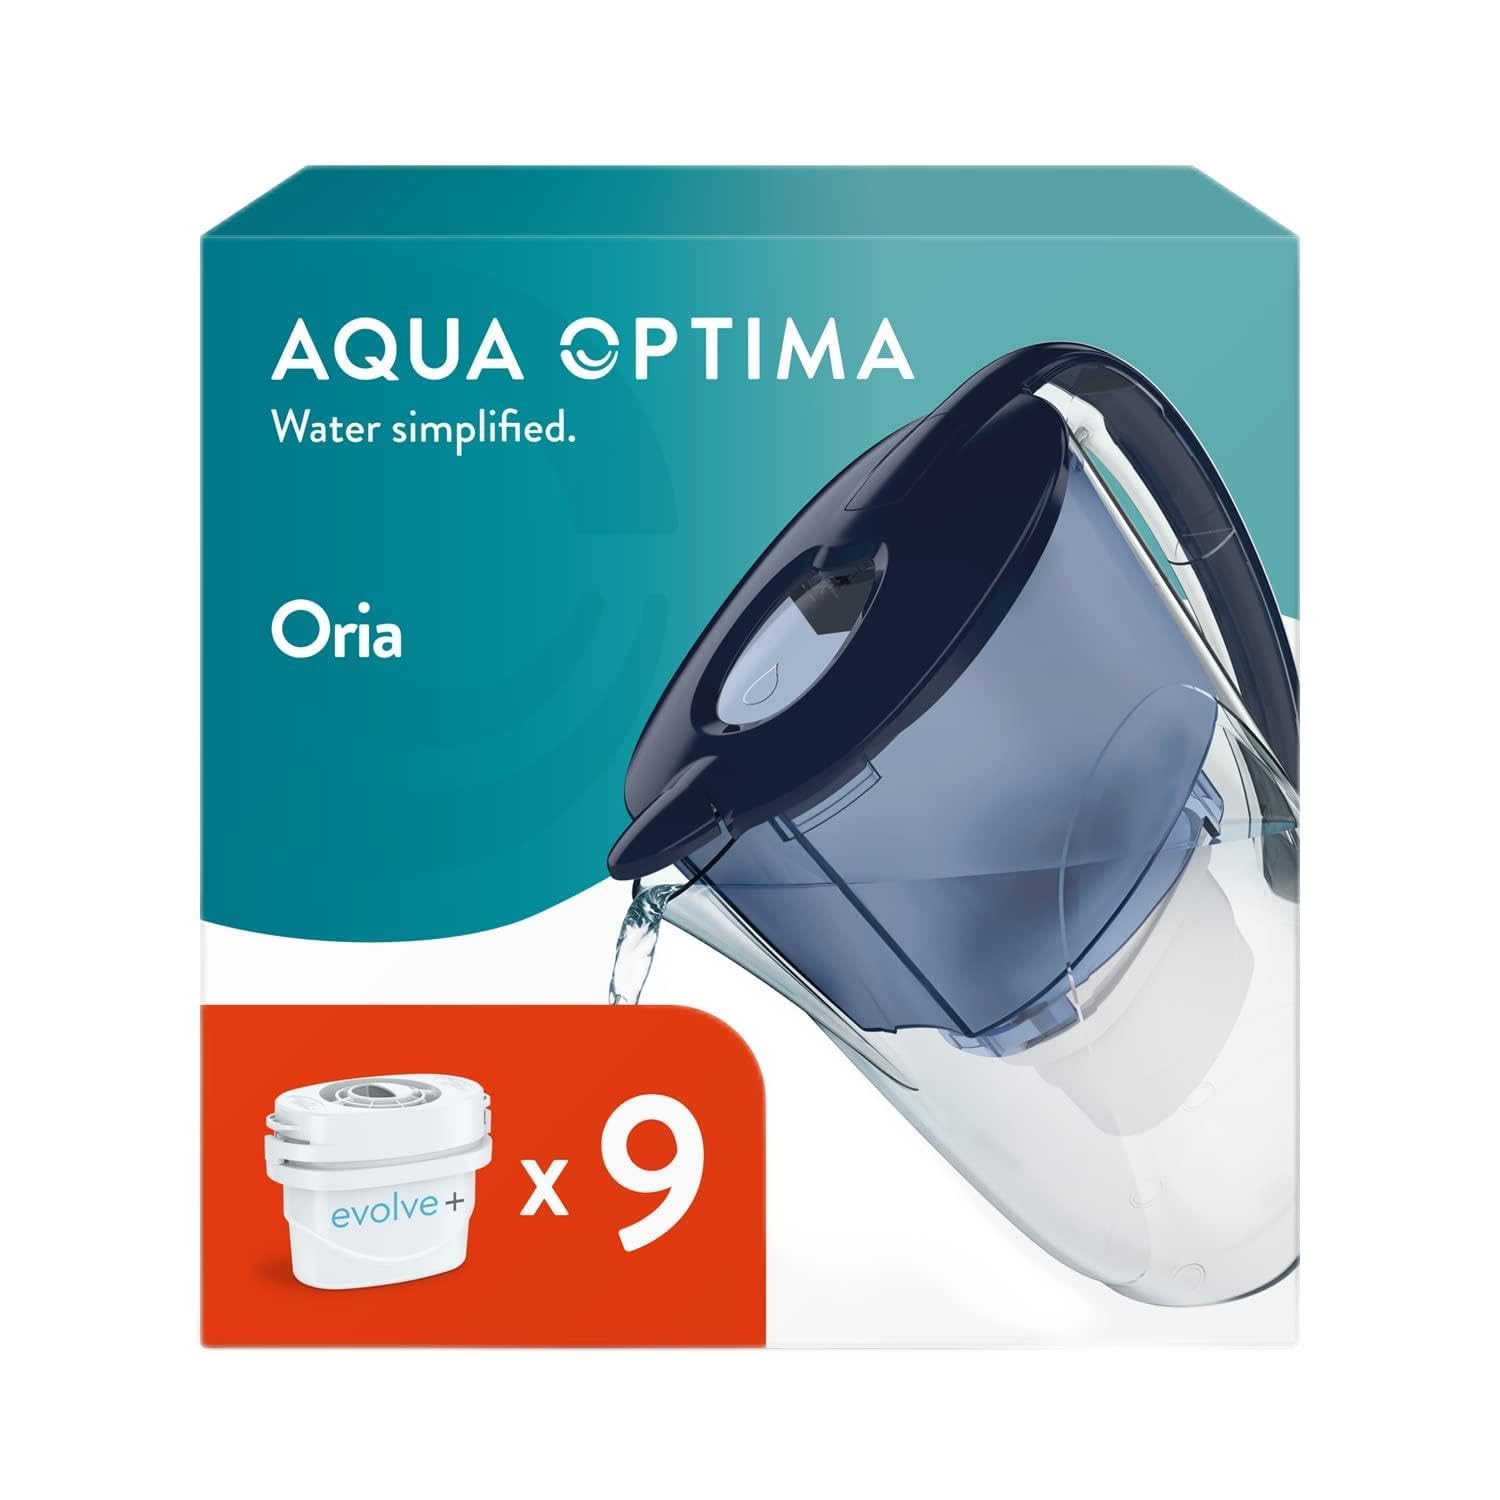 Aqua Optima Oria Wasserfilterkanne & 9 x 30 Tage Evolve+ Wasserfilterkartusche, 2,8 Liter Fassungsvermögen, zur Reduzierung von Mikroplastik, Chlor, Kalk und Verunreinigungen, Weiß